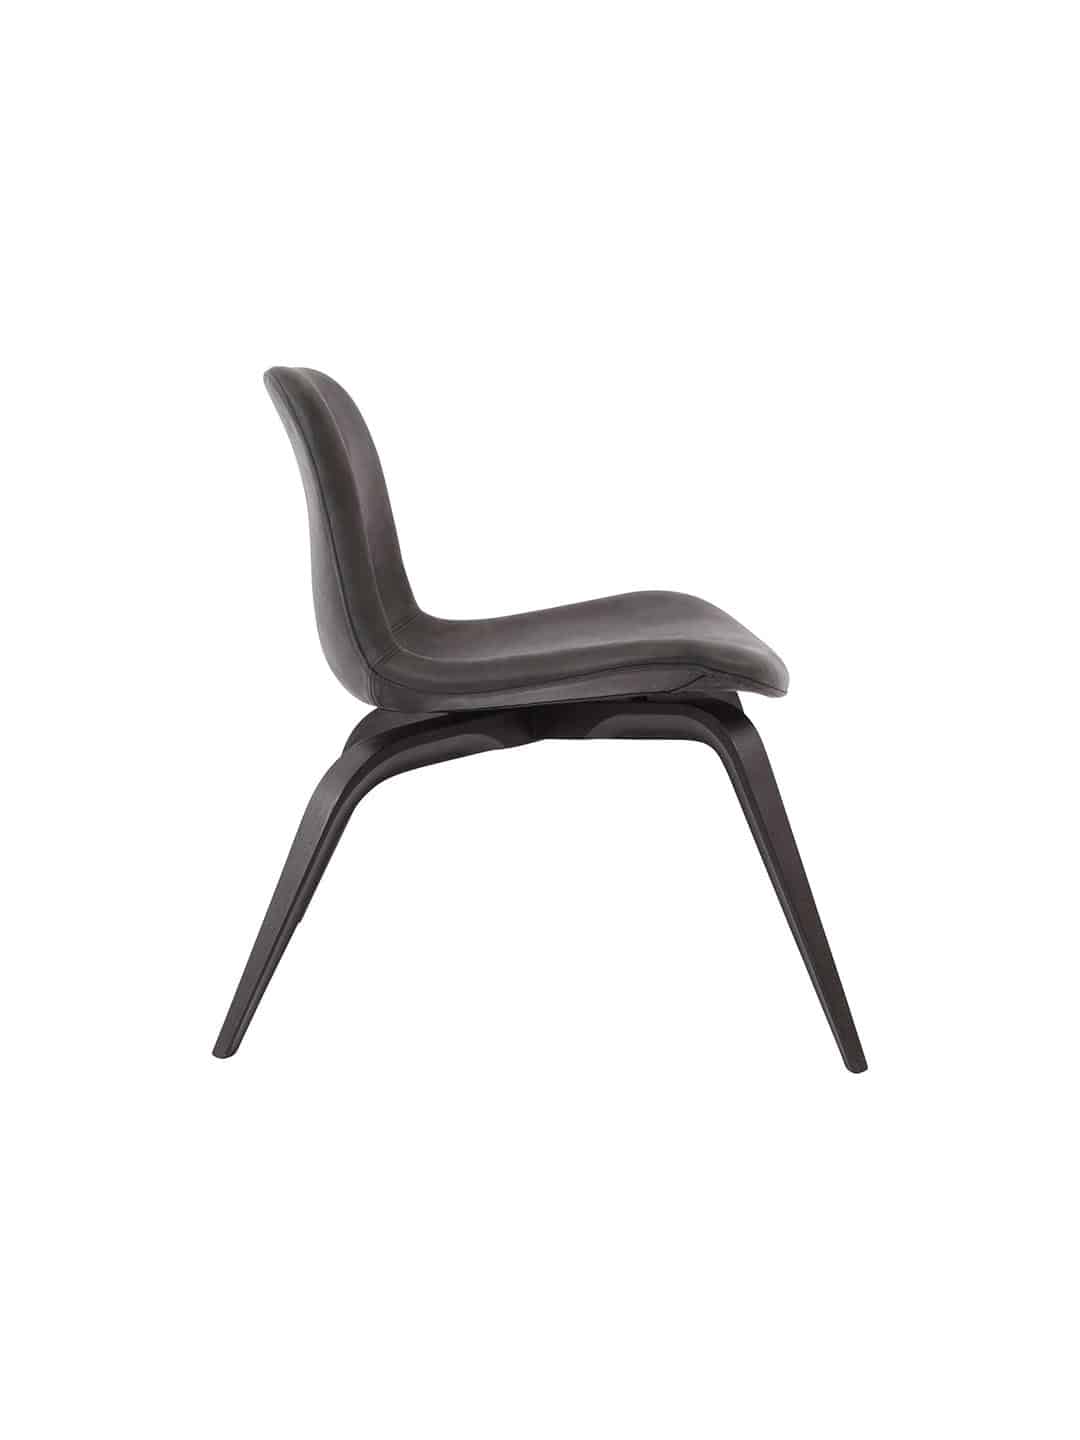 Скандинавское кресло для отдыха NORR11 Goose - кожа из черного дуба с кожей цвета антрацит